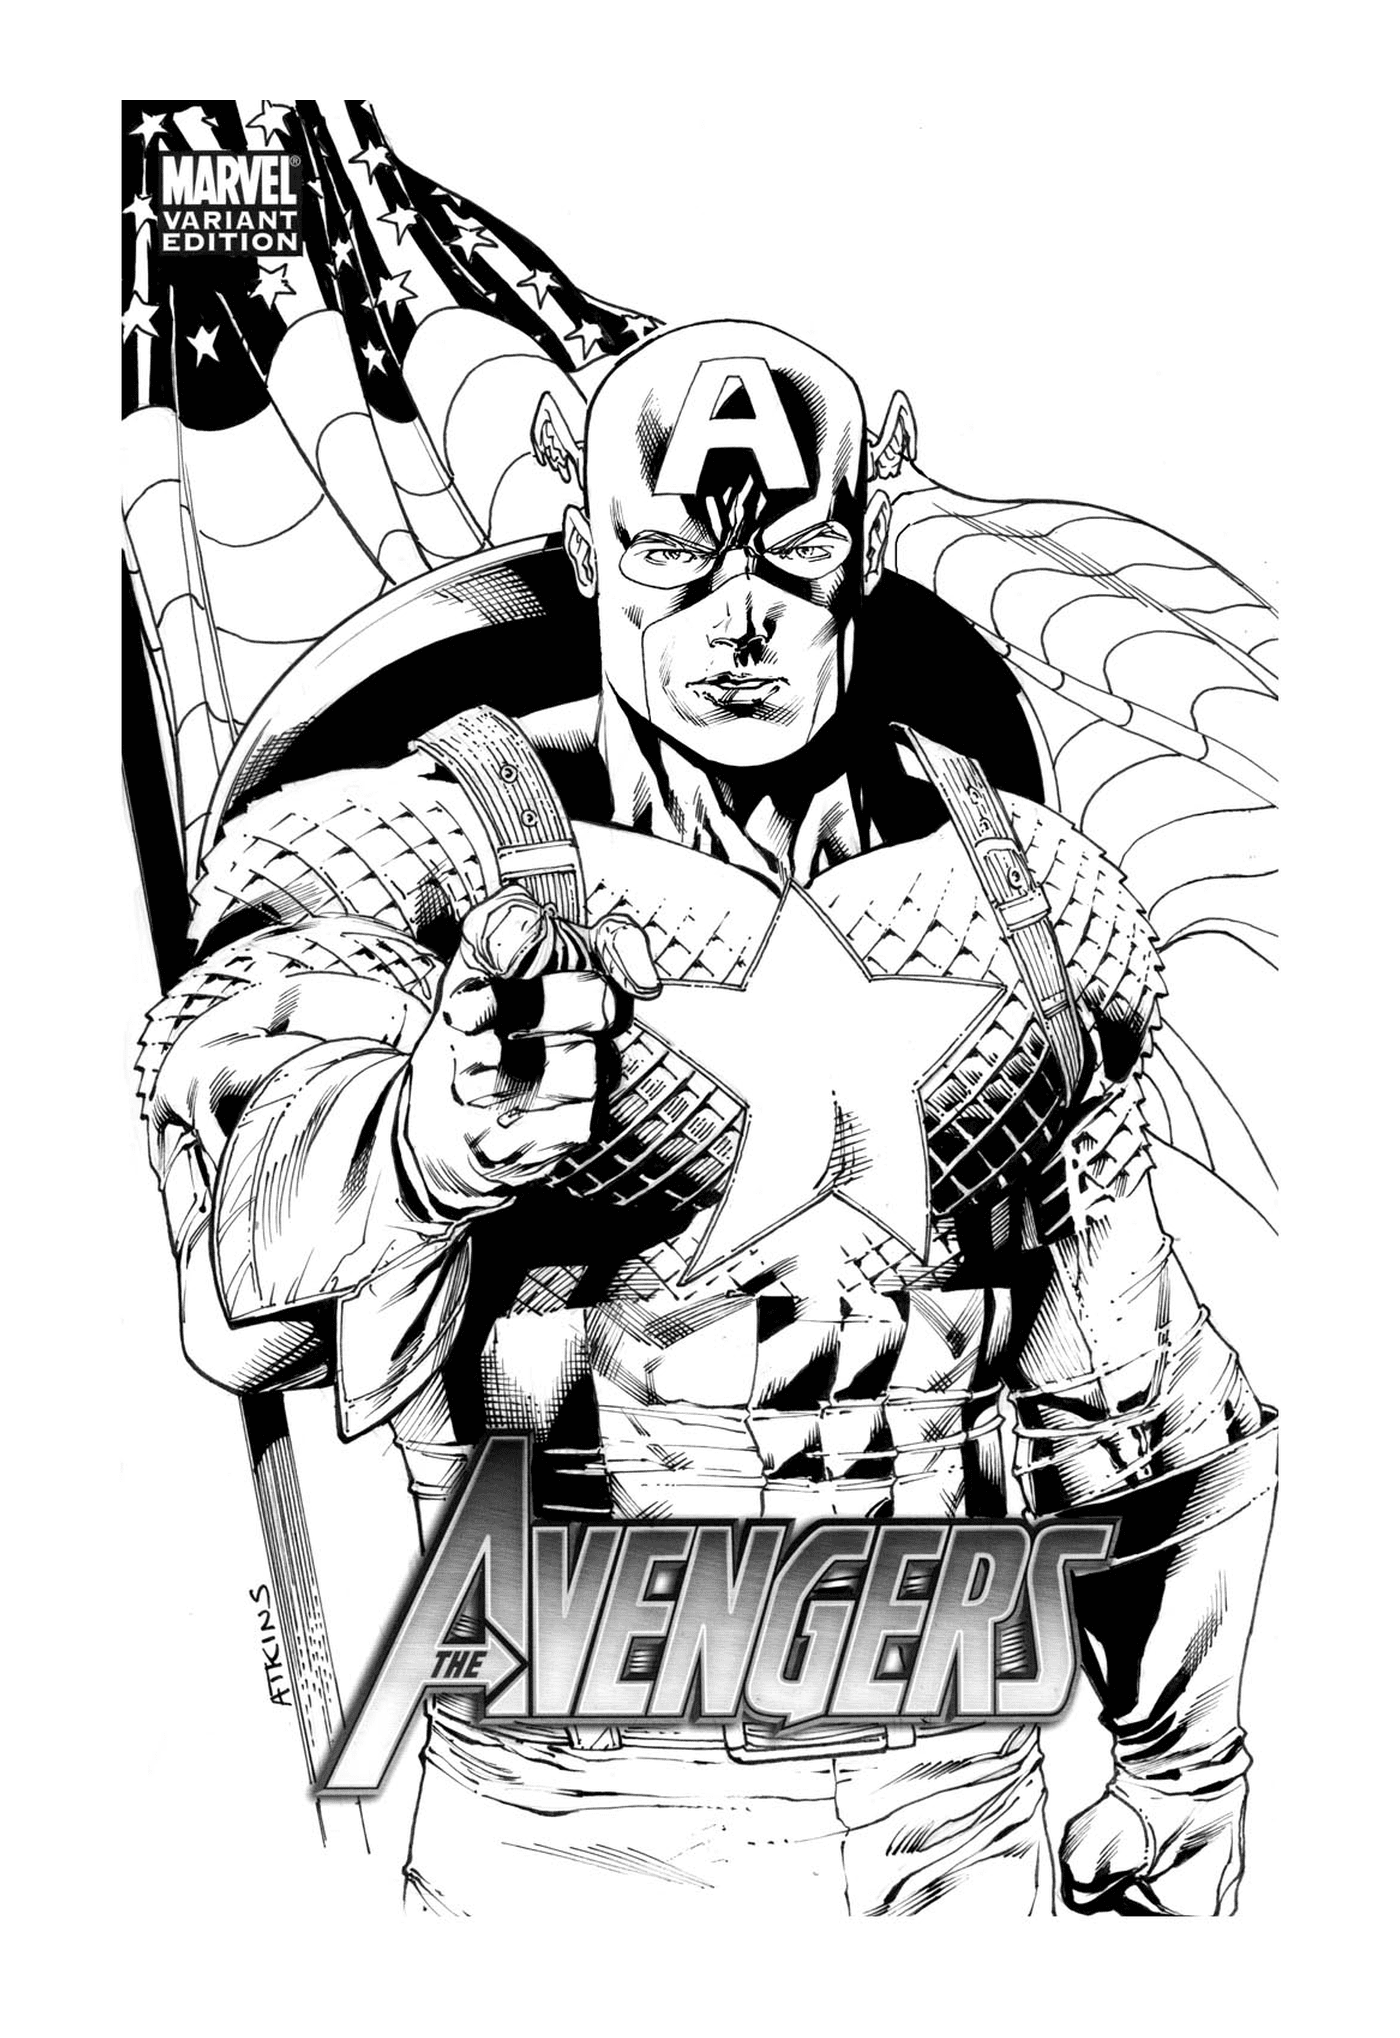  Vengadores Capitán América 274, hombre con un arma 